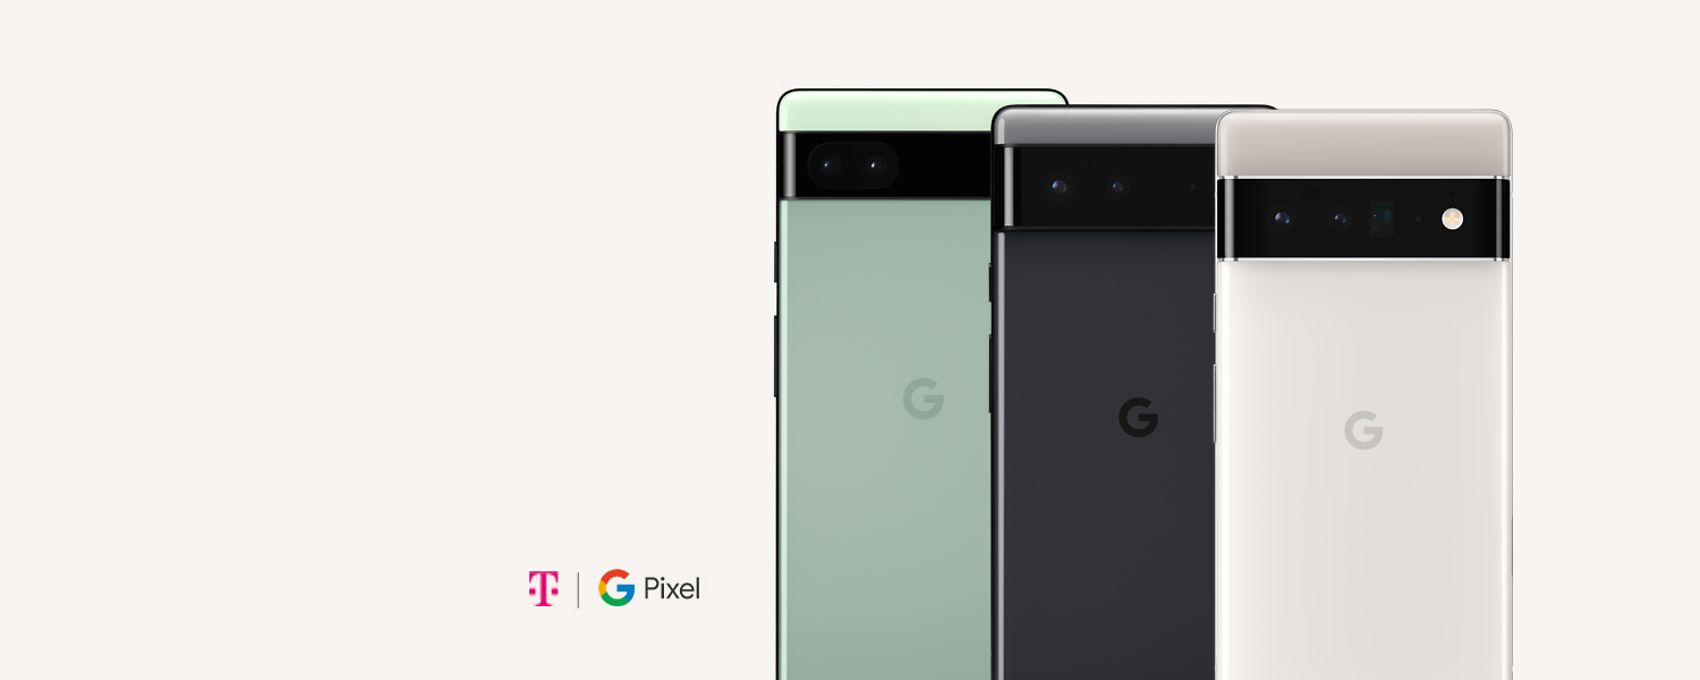 Drei Google Pixel 6 Handys mit magenta Farbenen Formen und Telekom und Google Logo.